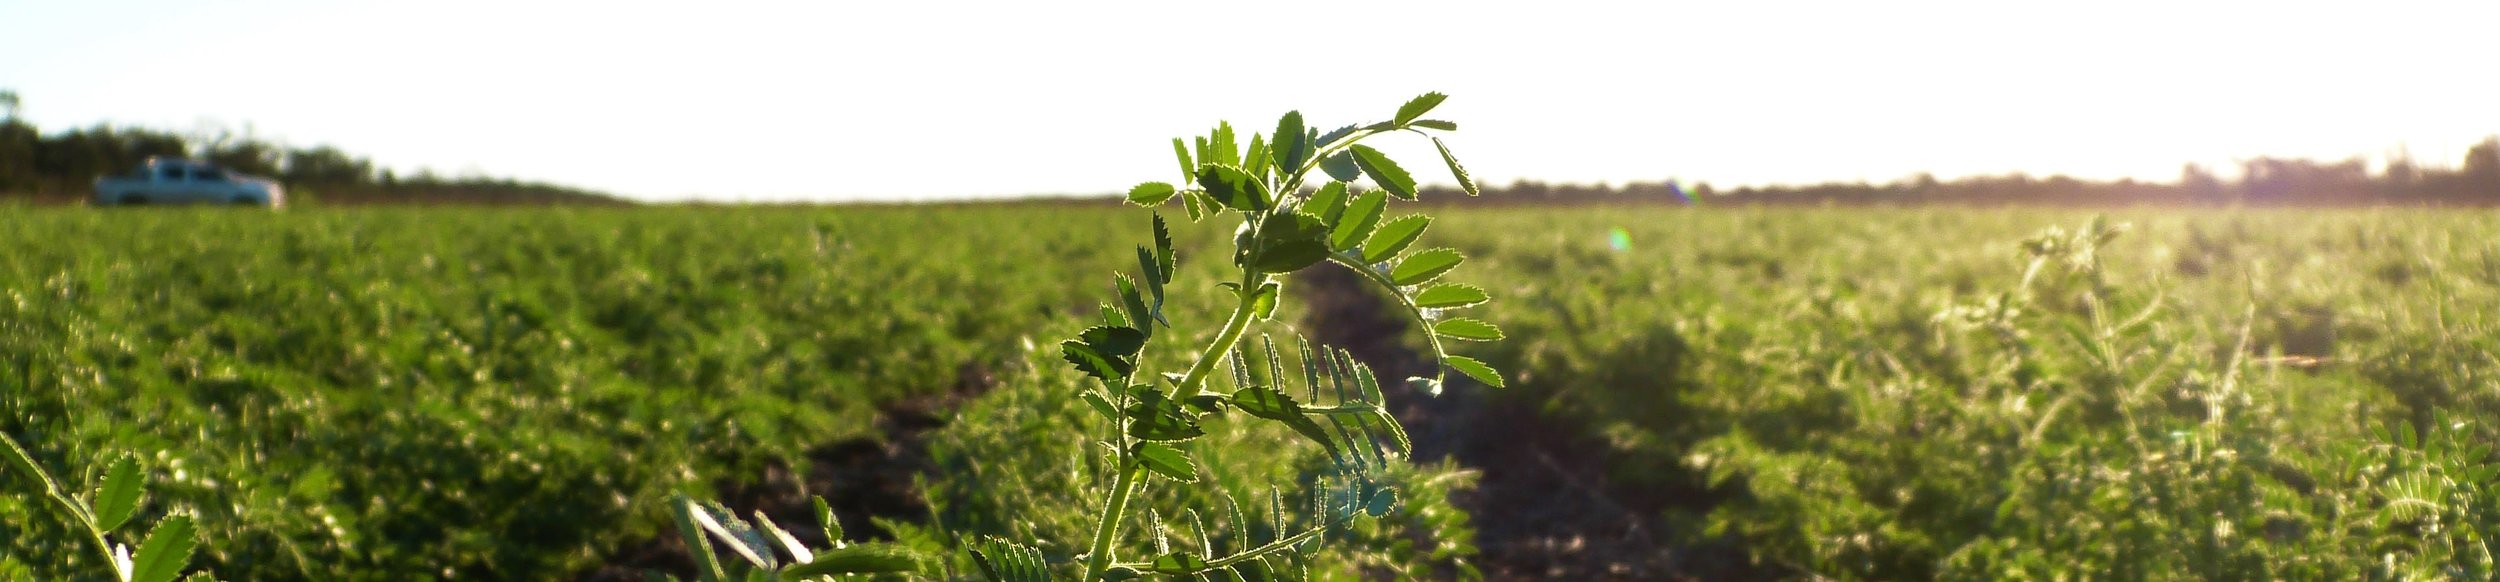 Los garbanzos son una de las primeras legumbres cultivadas del mundo.